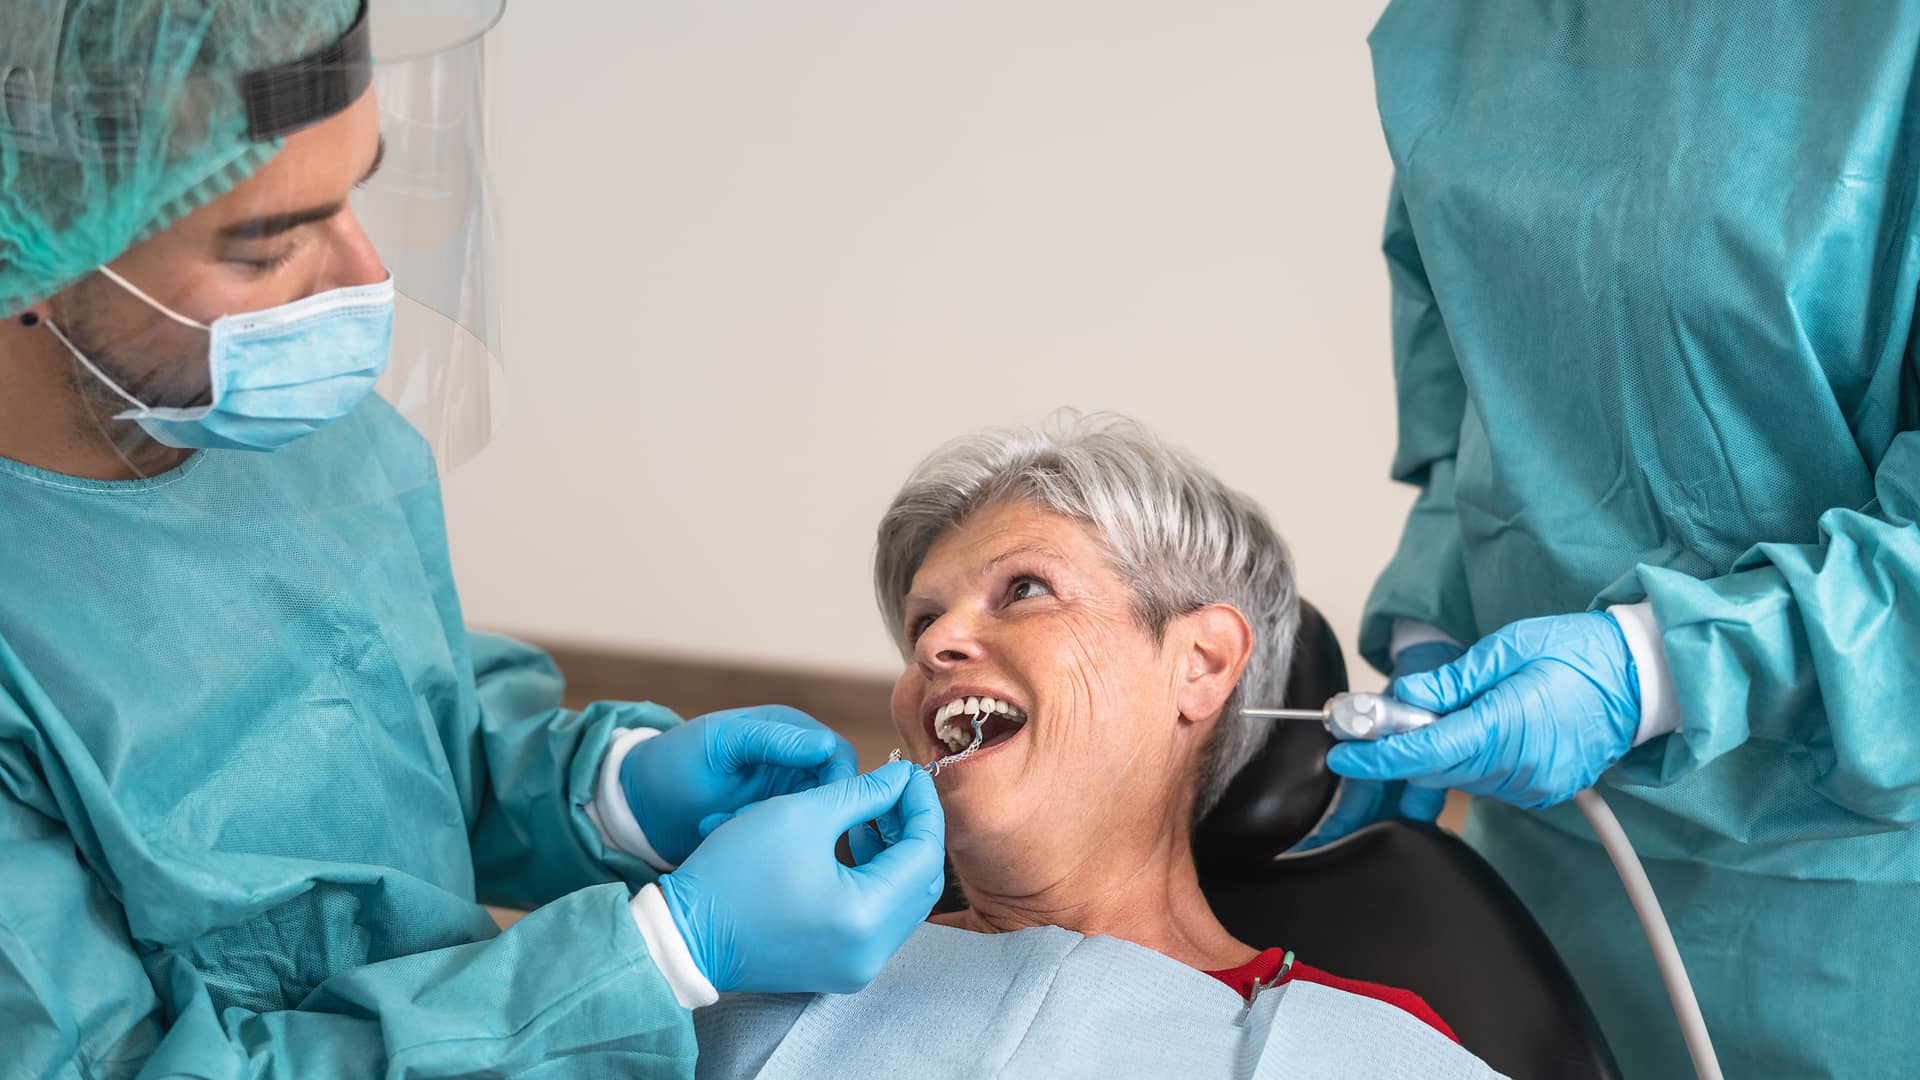 Mujer en clinica dental poniendose implantes con su seguro dental